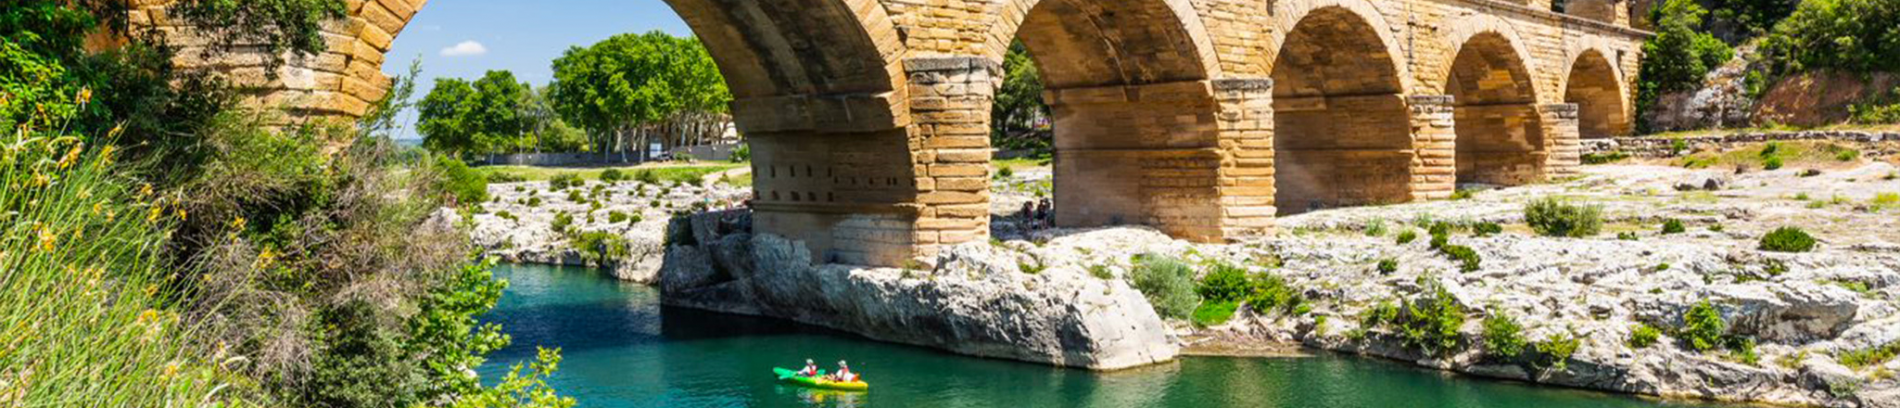 Slide Pont du Gard